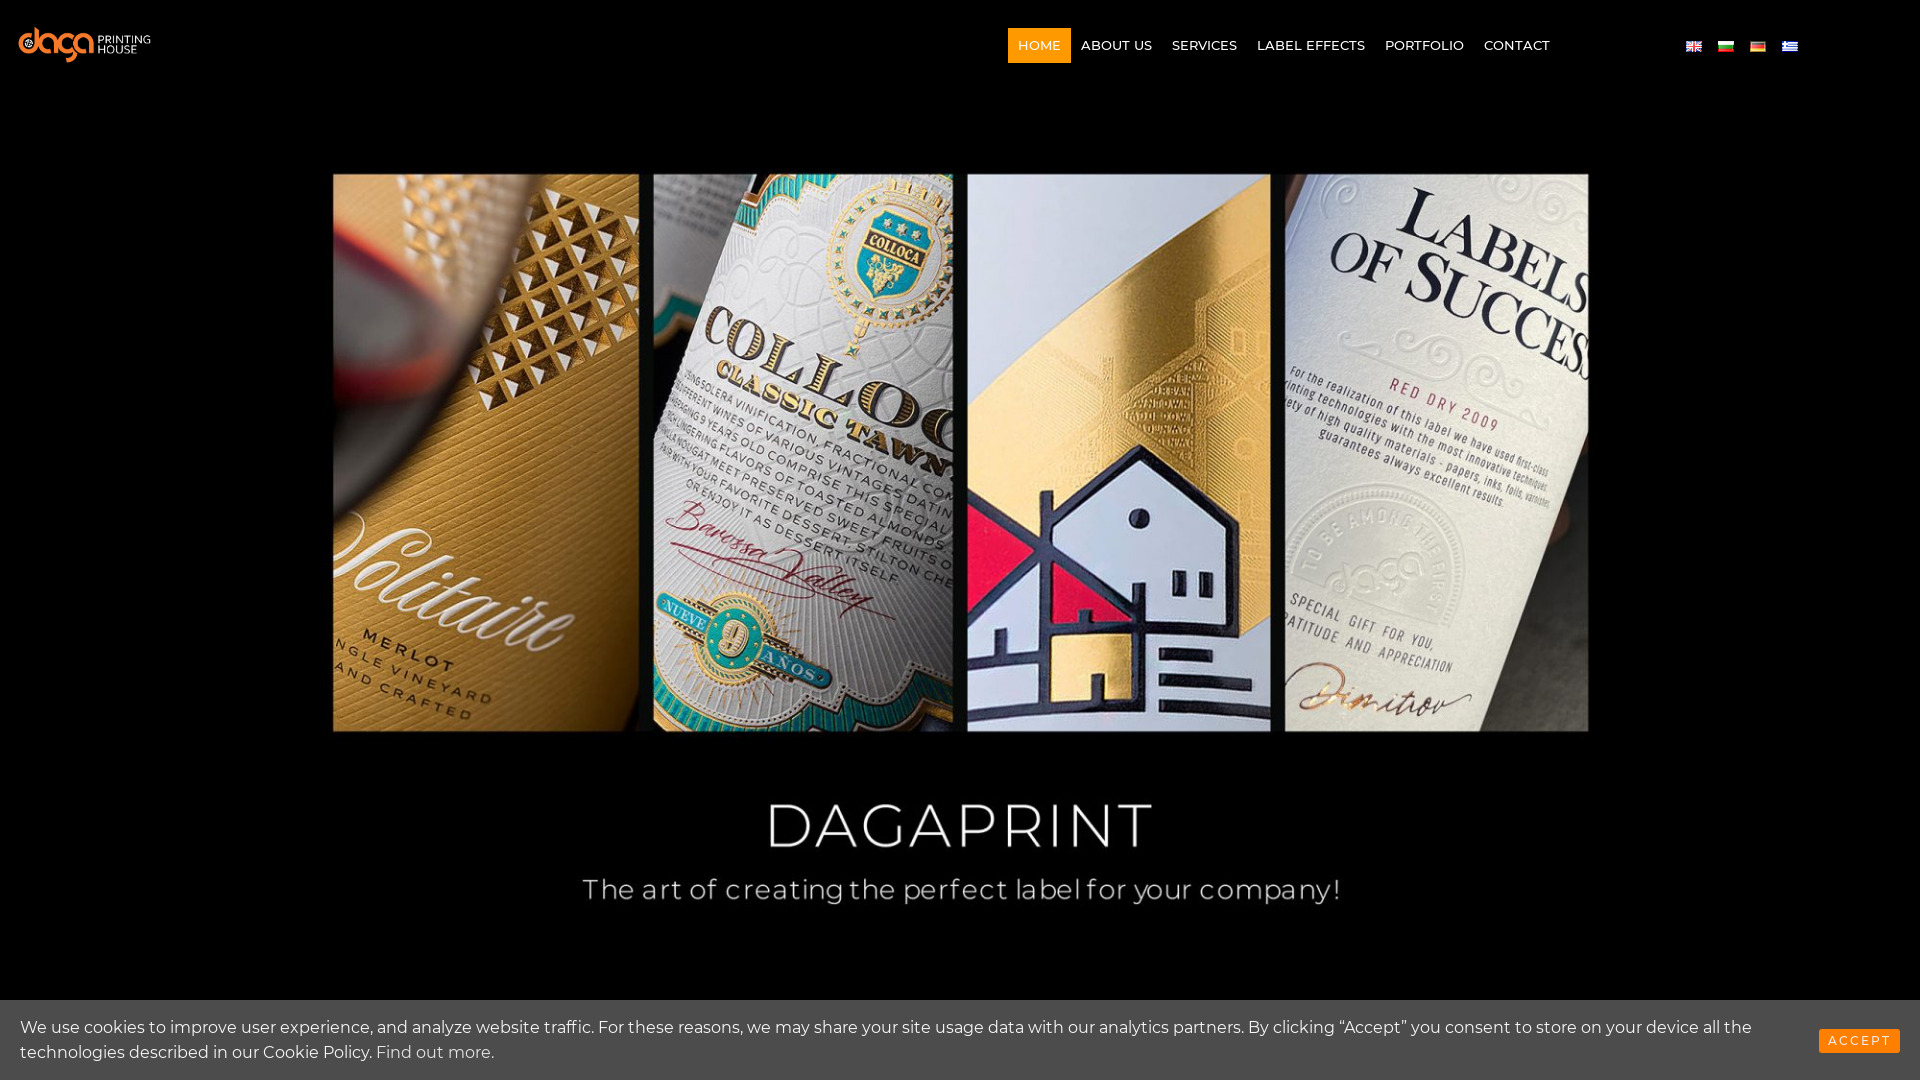 dagaprint.com